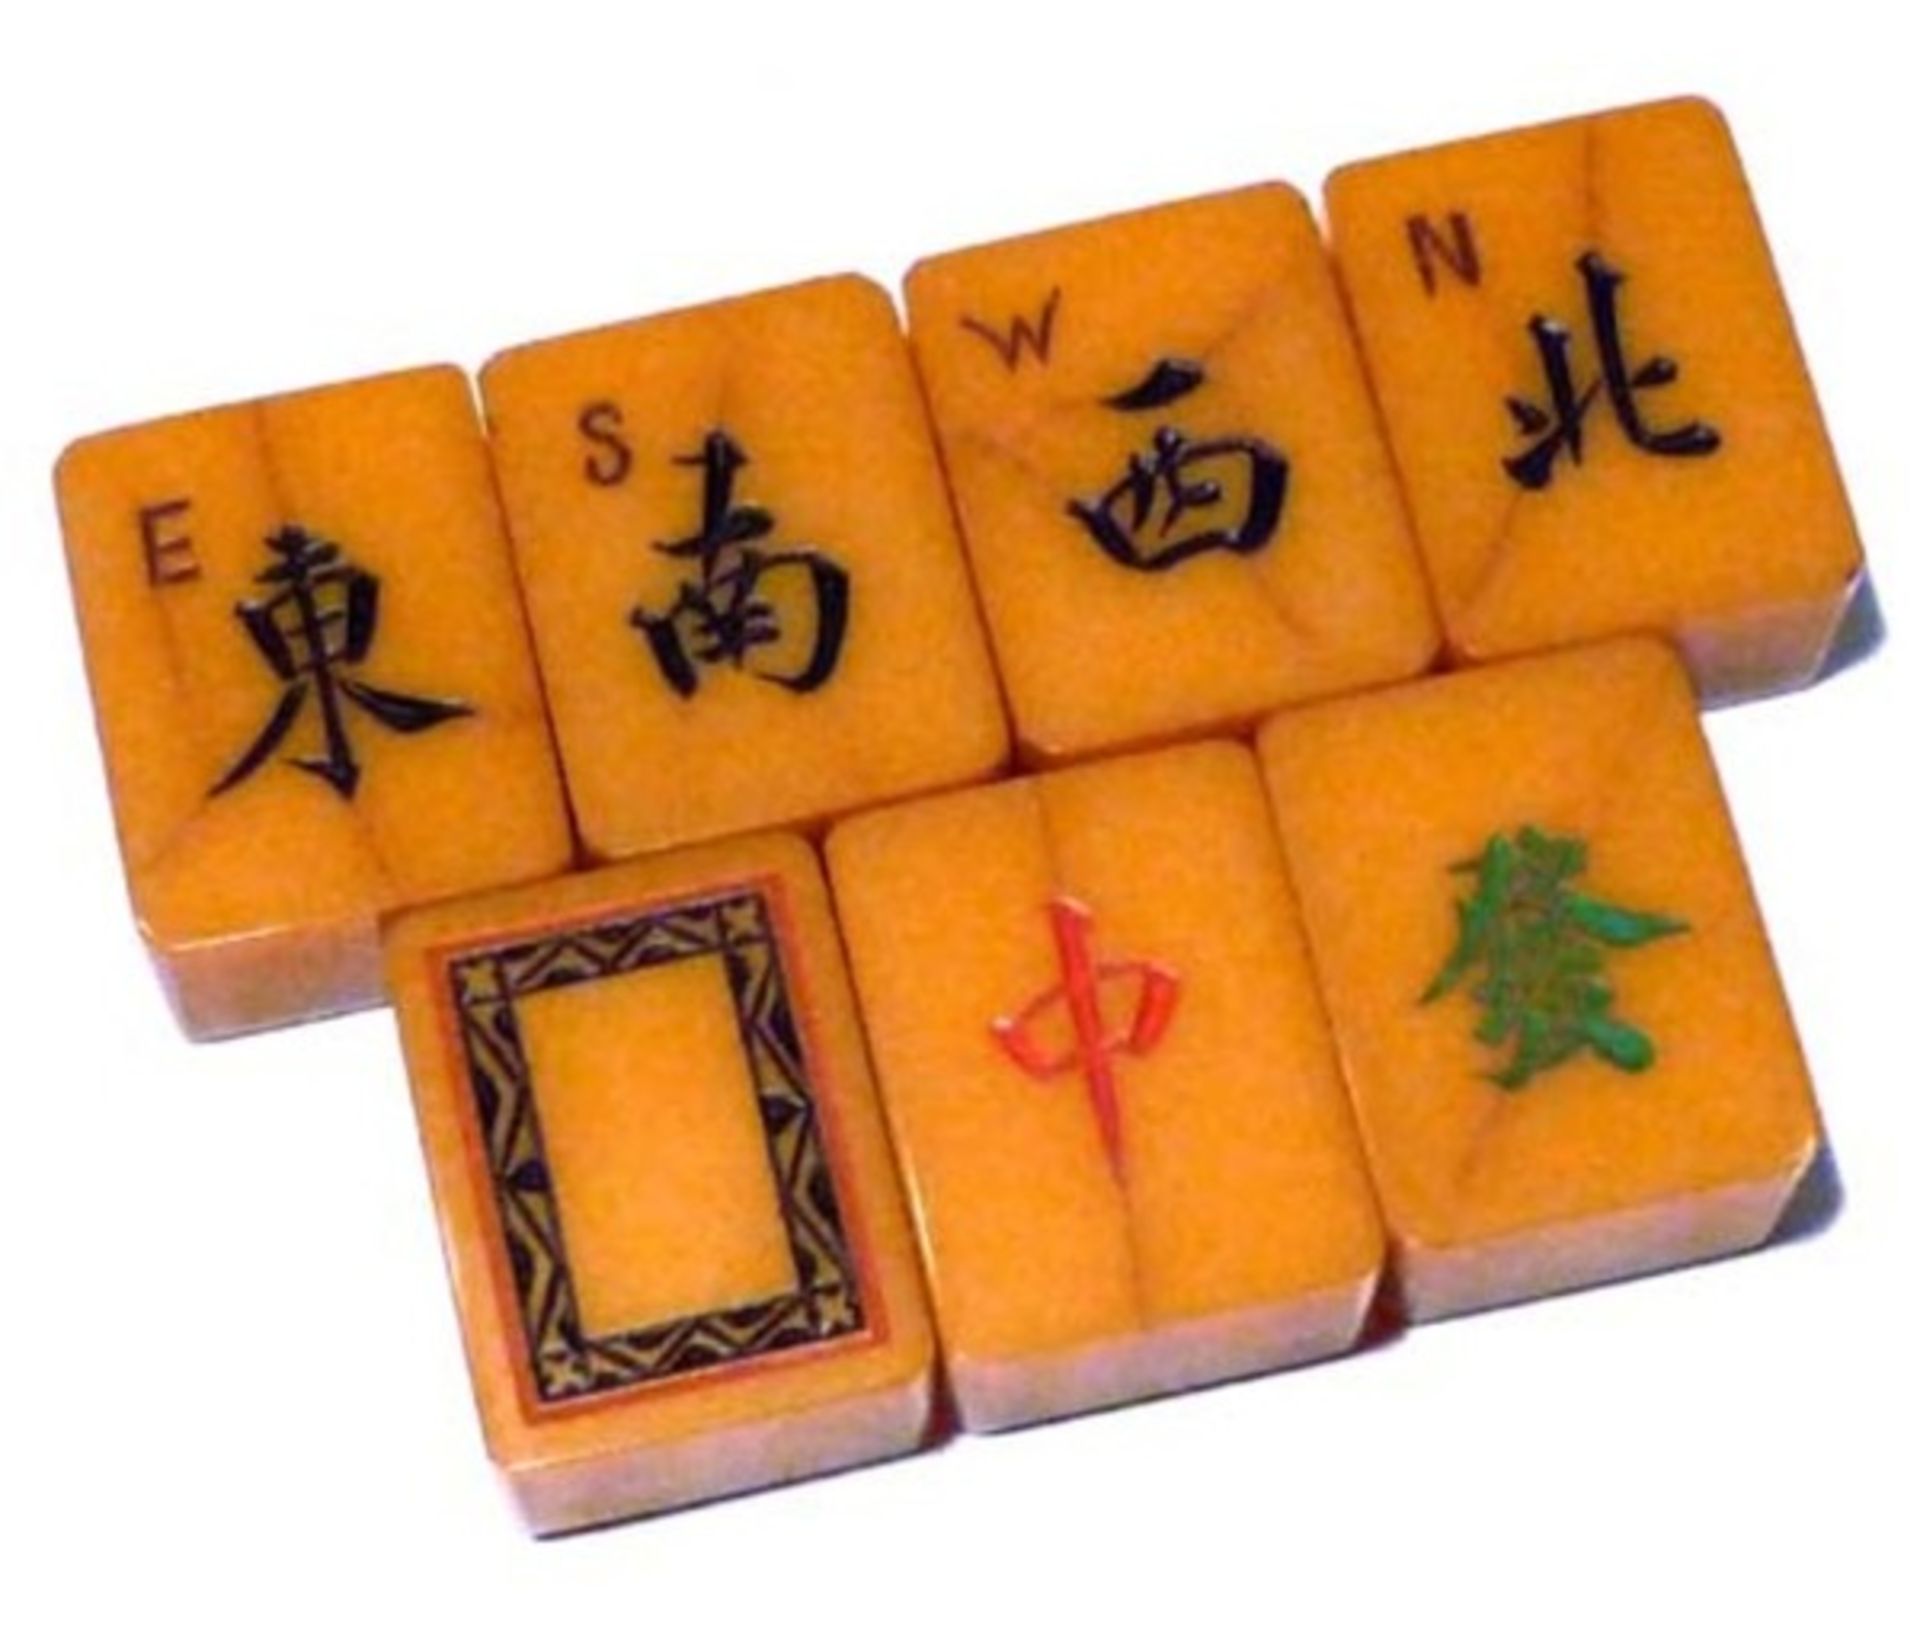 (Mahjong) Mahjong kunststof, traditionele 5-laden doos, ca. 1923 - Bild 3 aus 13